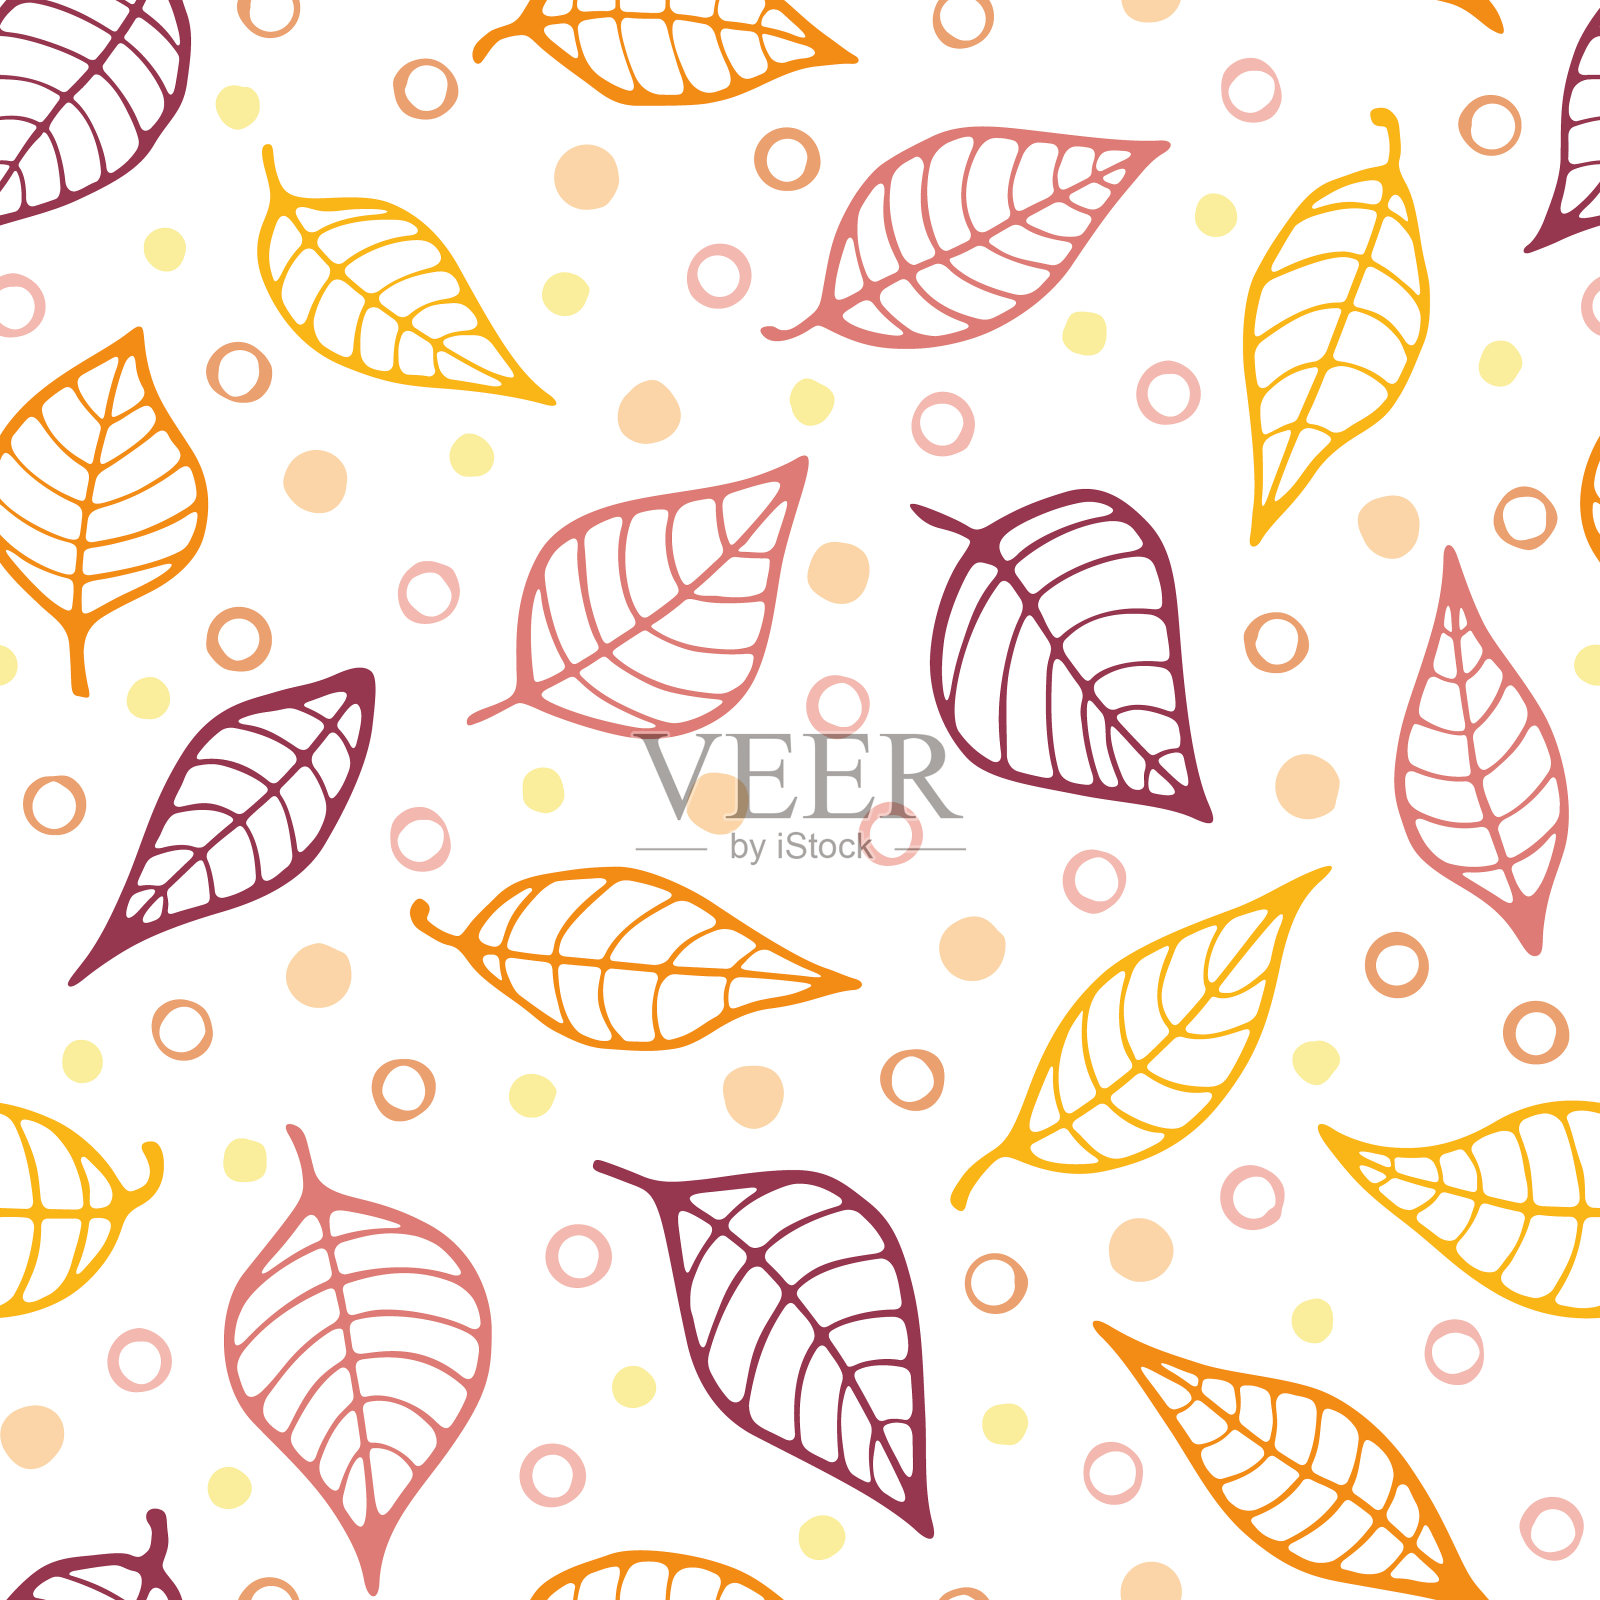 矢量涂鸦树叶重复图案背景。秋天的颜色。黄色、橙色和赤土色。手绘抽象无缝纹理。插画图片素材